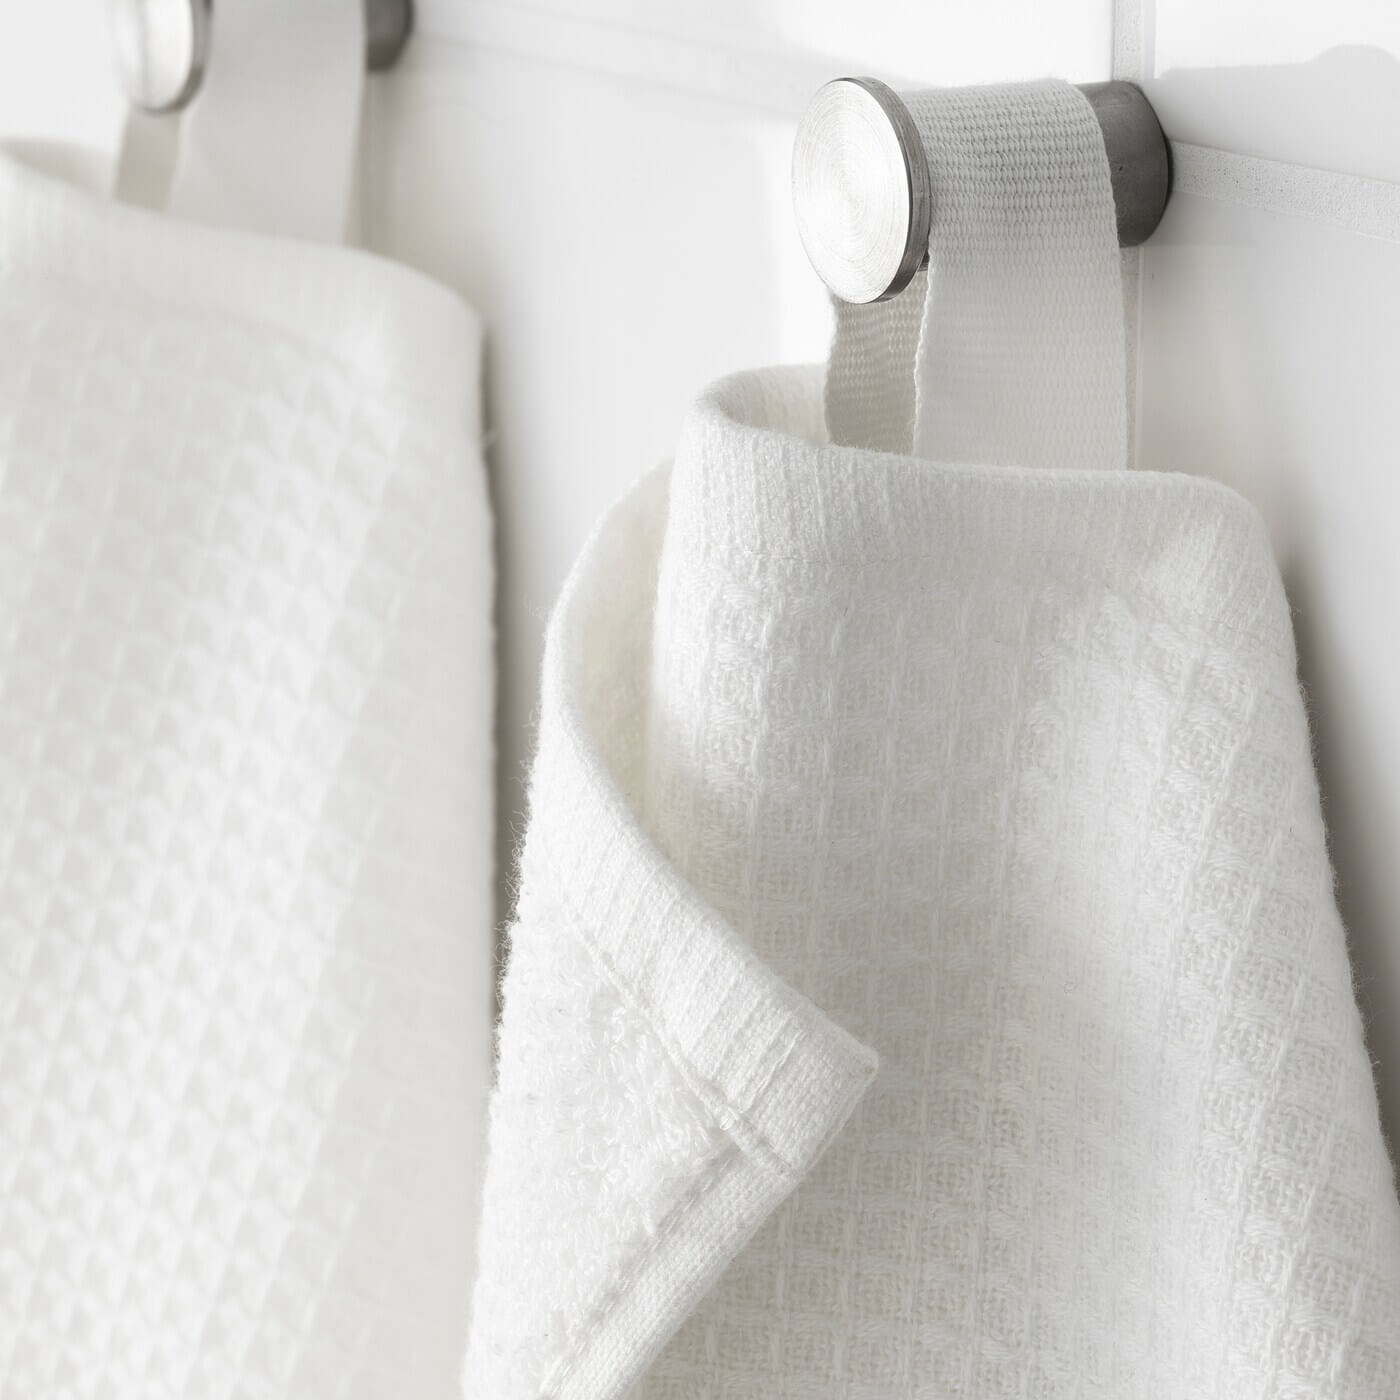 Sau khi rửa mặt xong, hãy giúp khăn được khô ráo bằng cách phơi chúng ở nơi thoáng mát